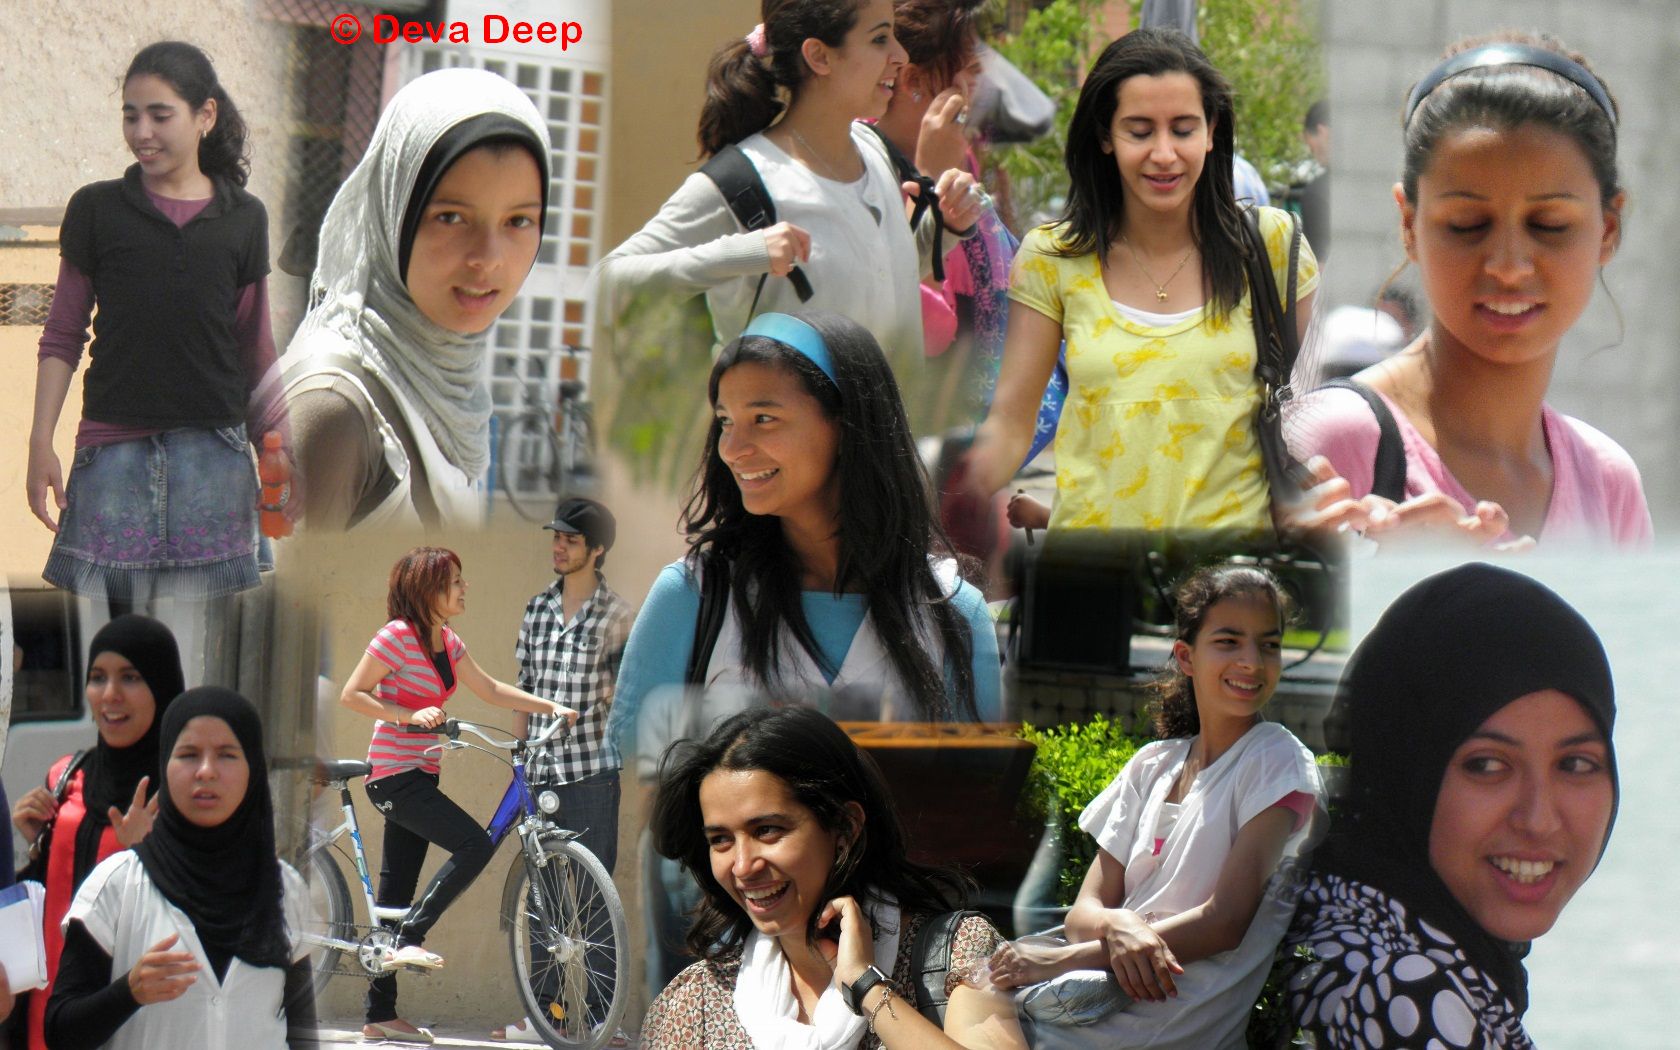 Women Only: Inside a Moroccan Hammam